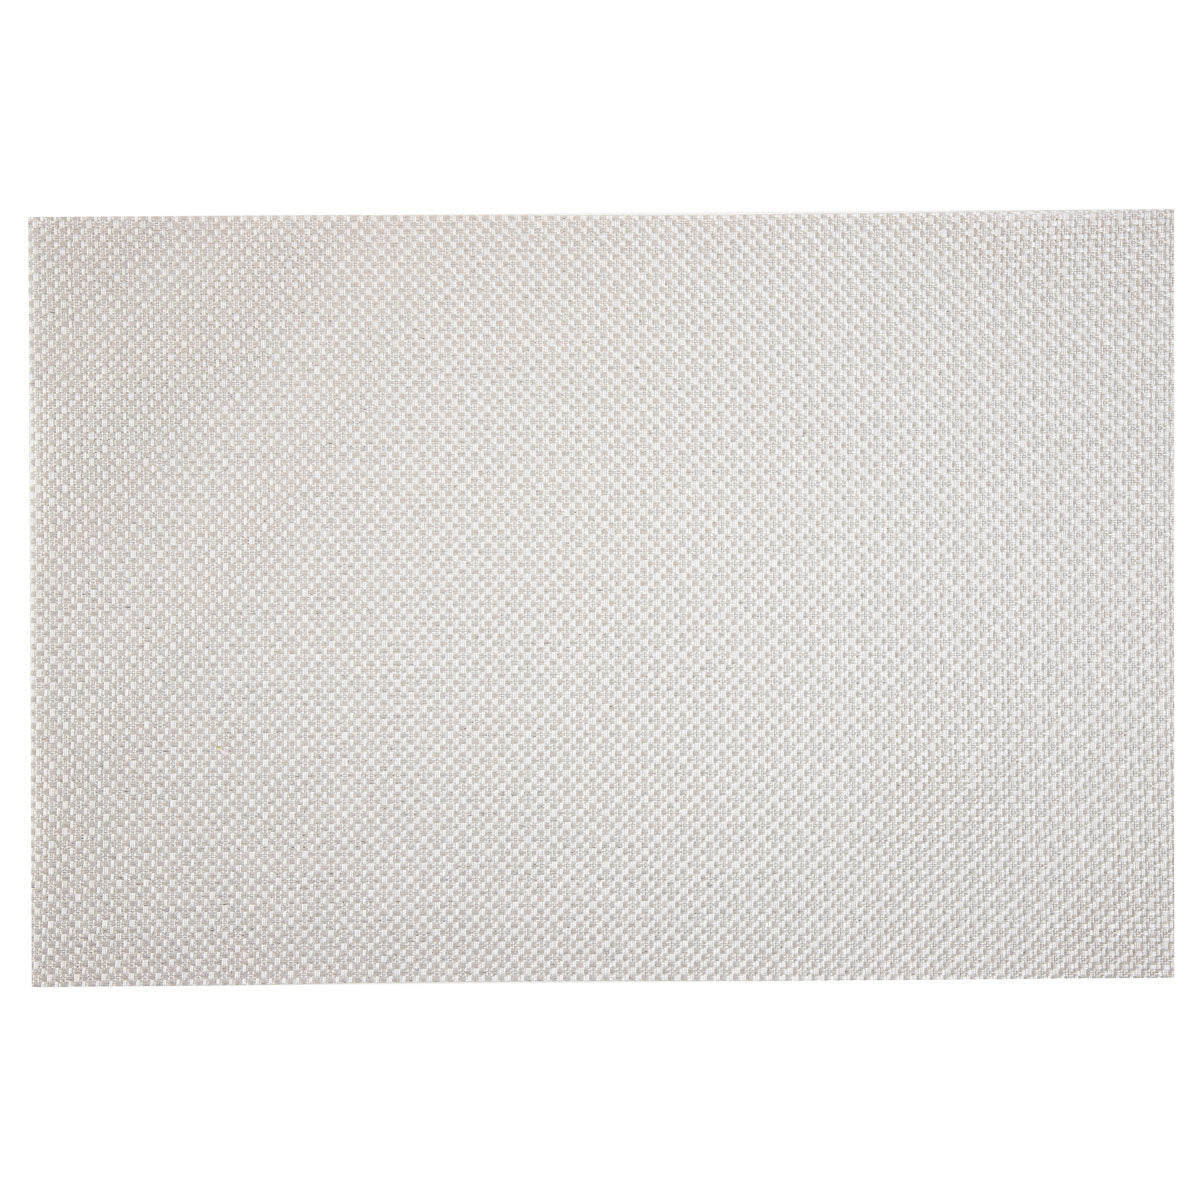 Suport de Farfurii pentru Masa Glamo Argintiu 30x45 cm